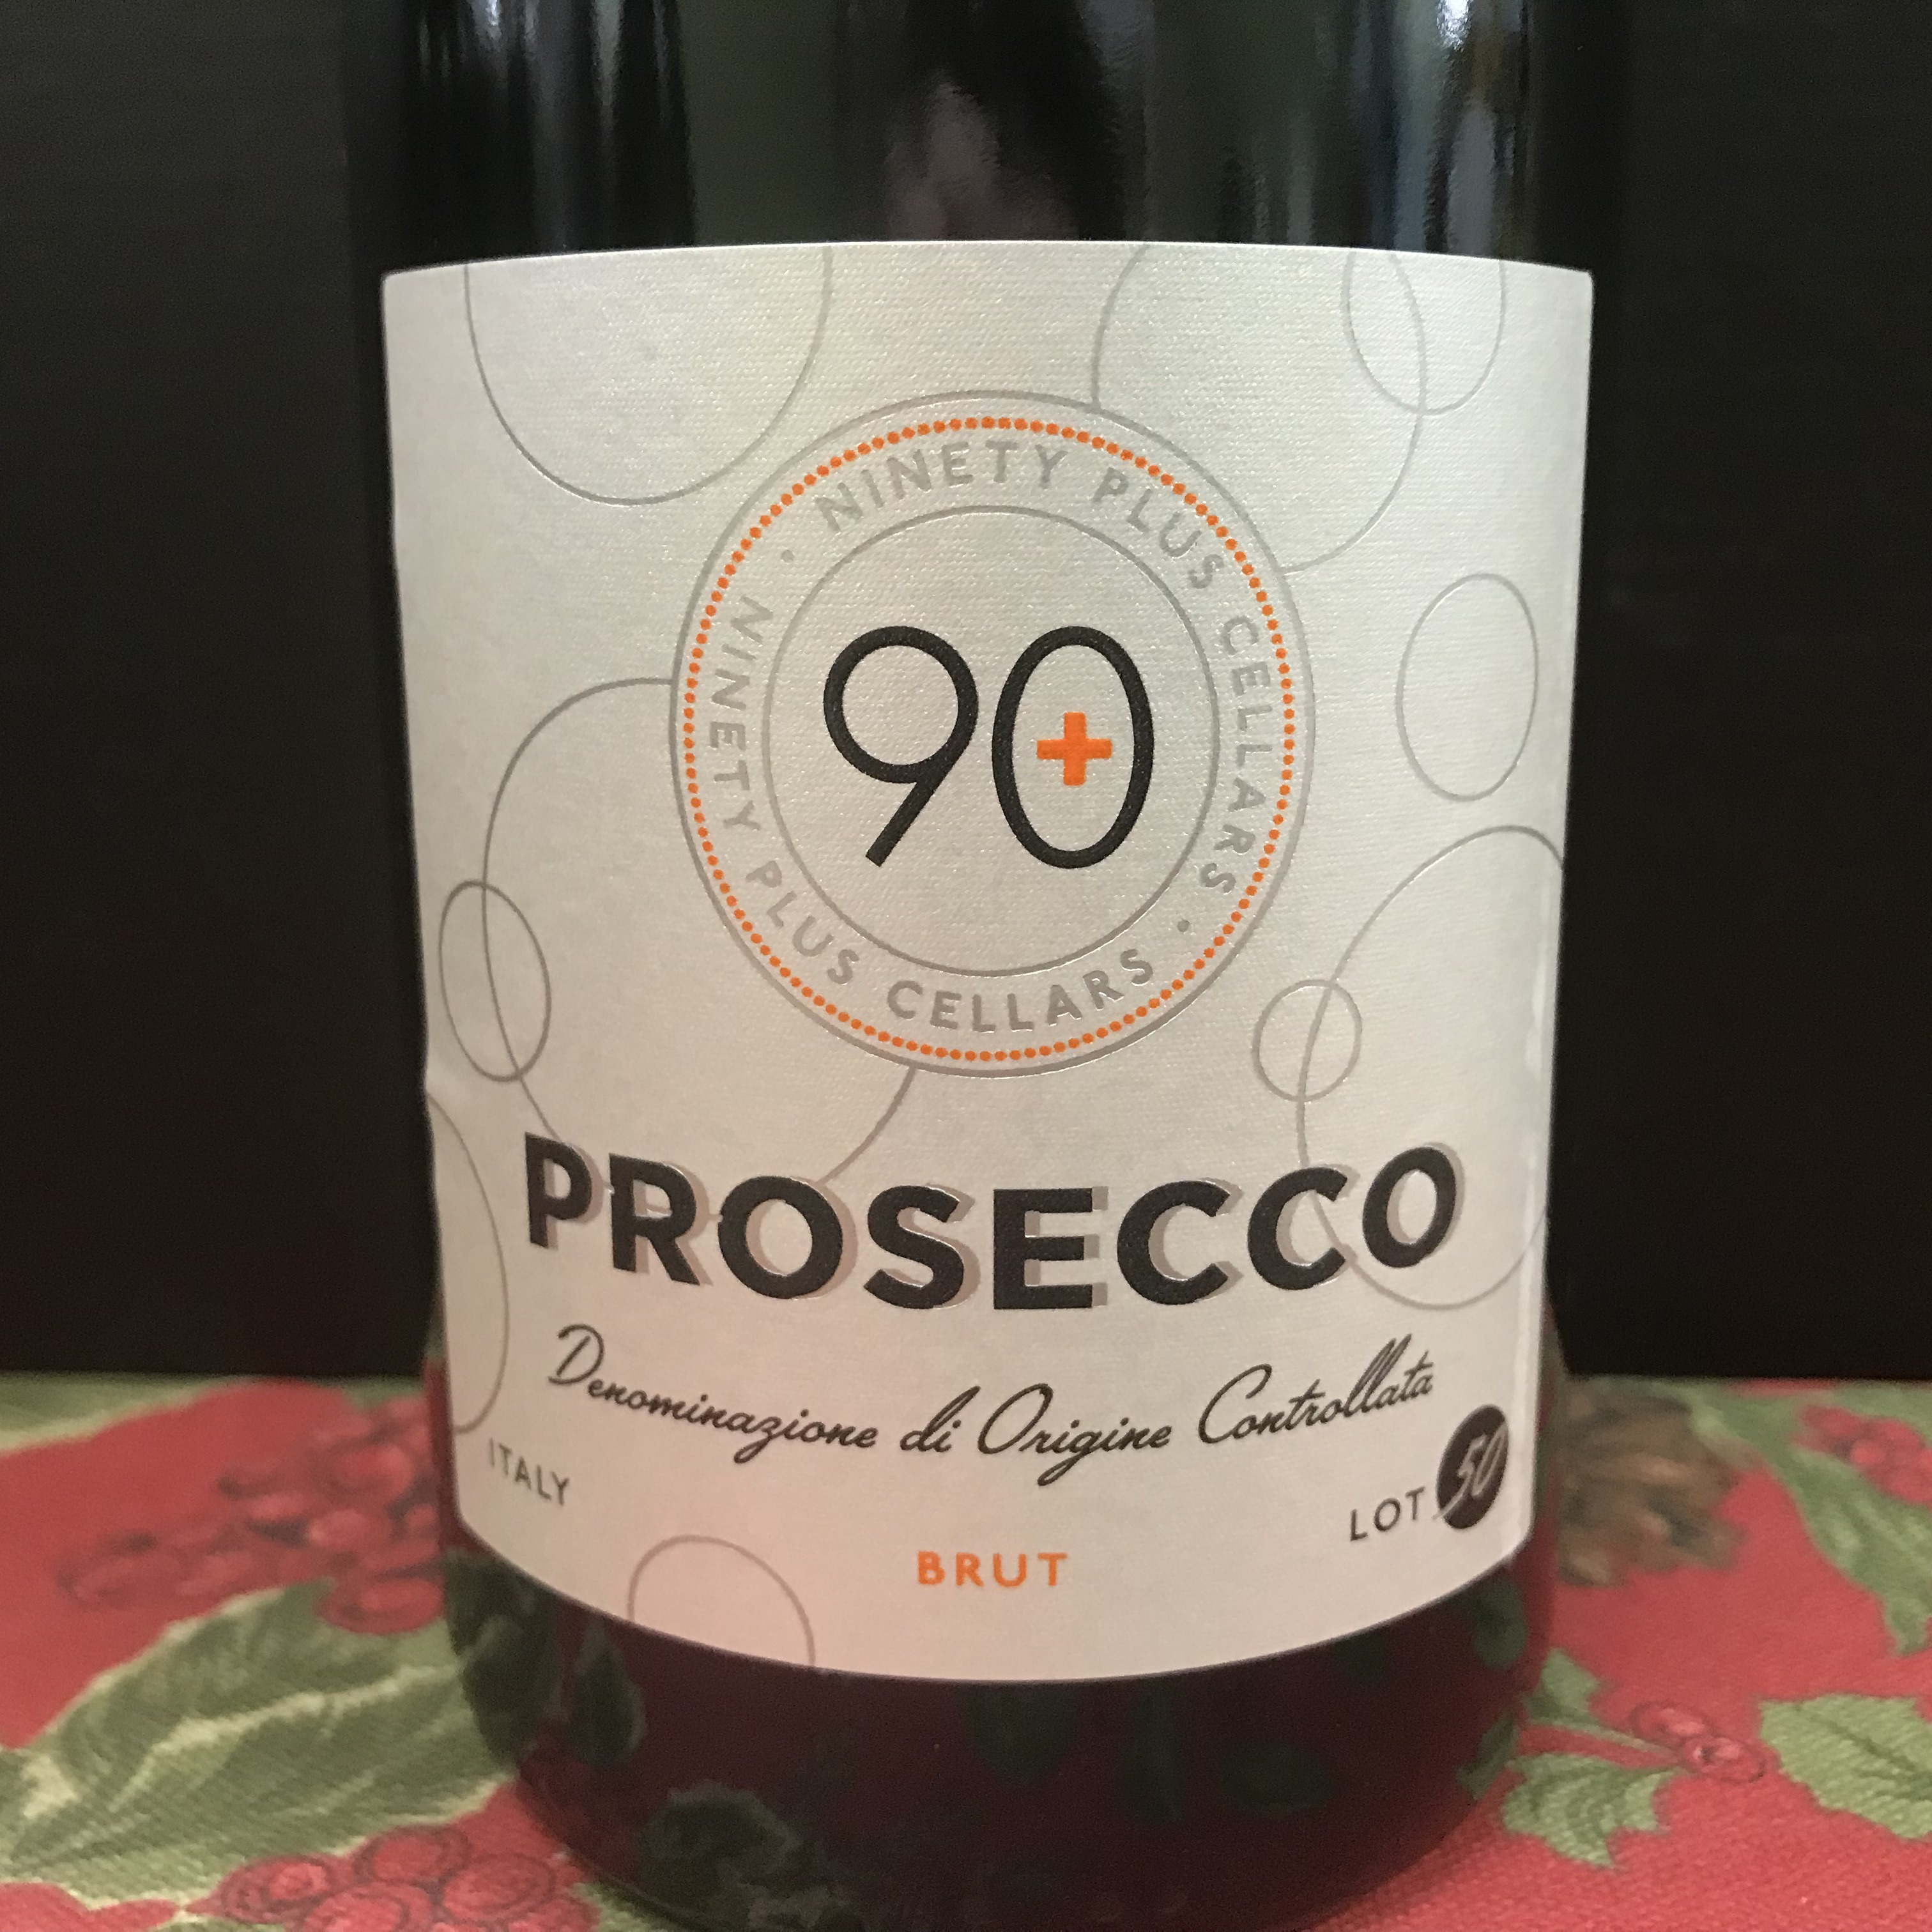 90+ Cellars Prosecco